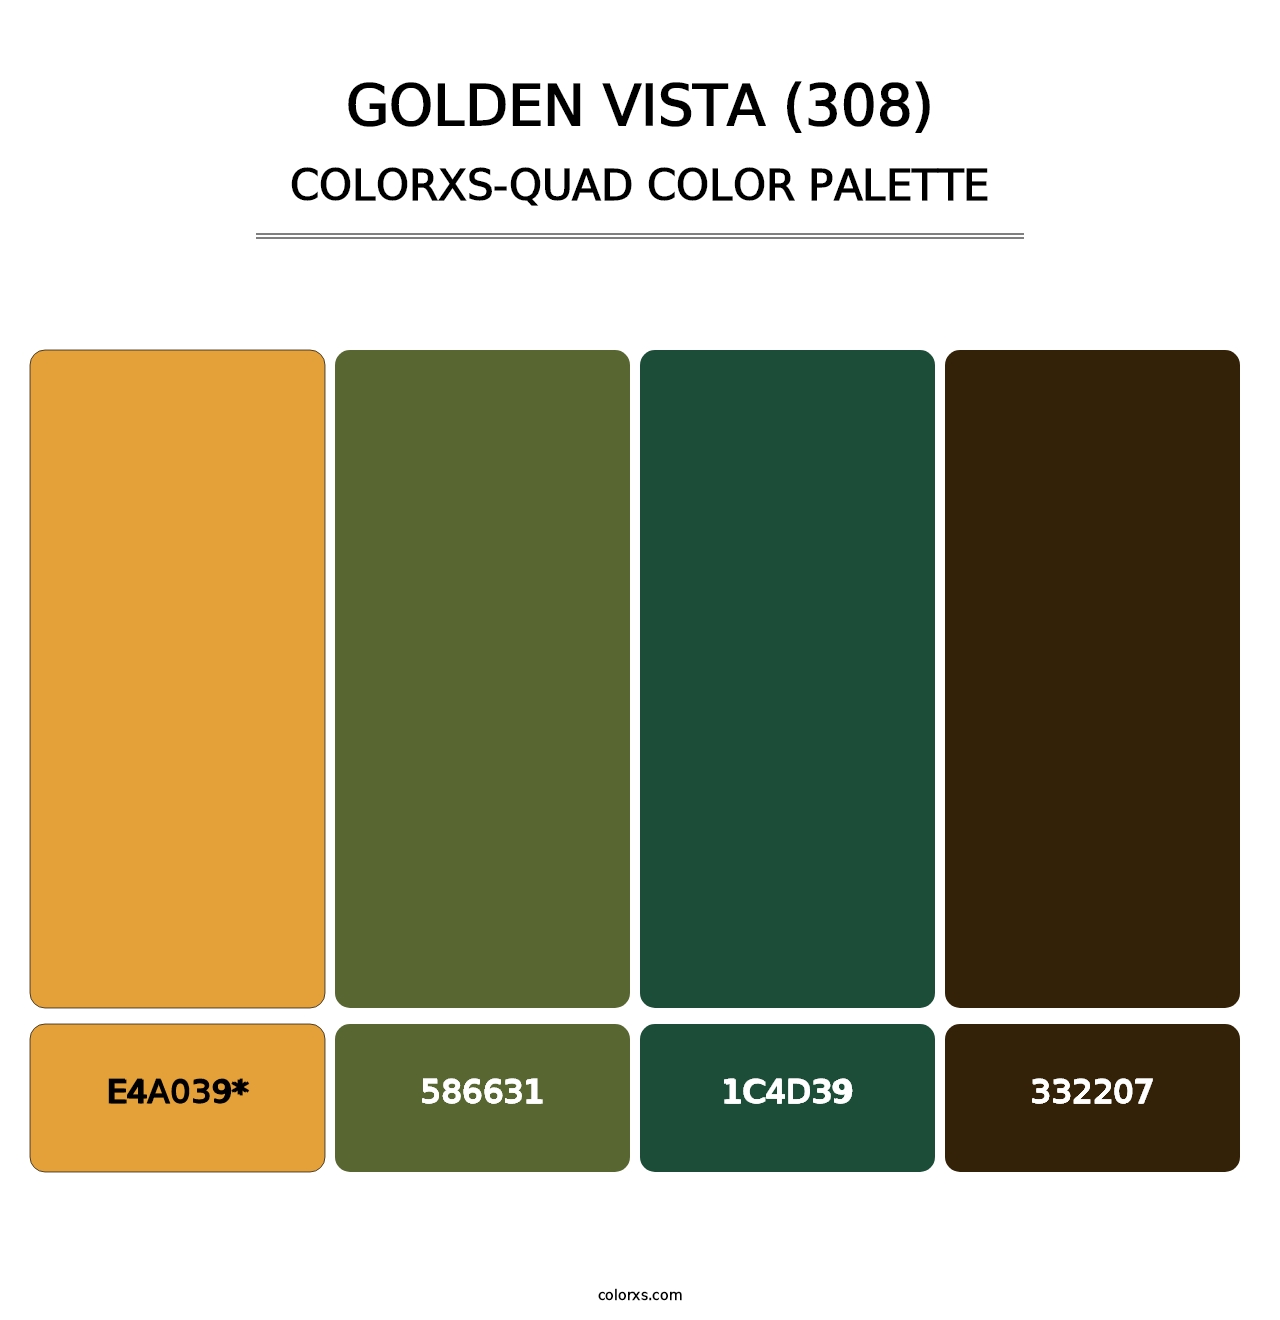 Golden Vista (308) - Colorxs Quad Palette